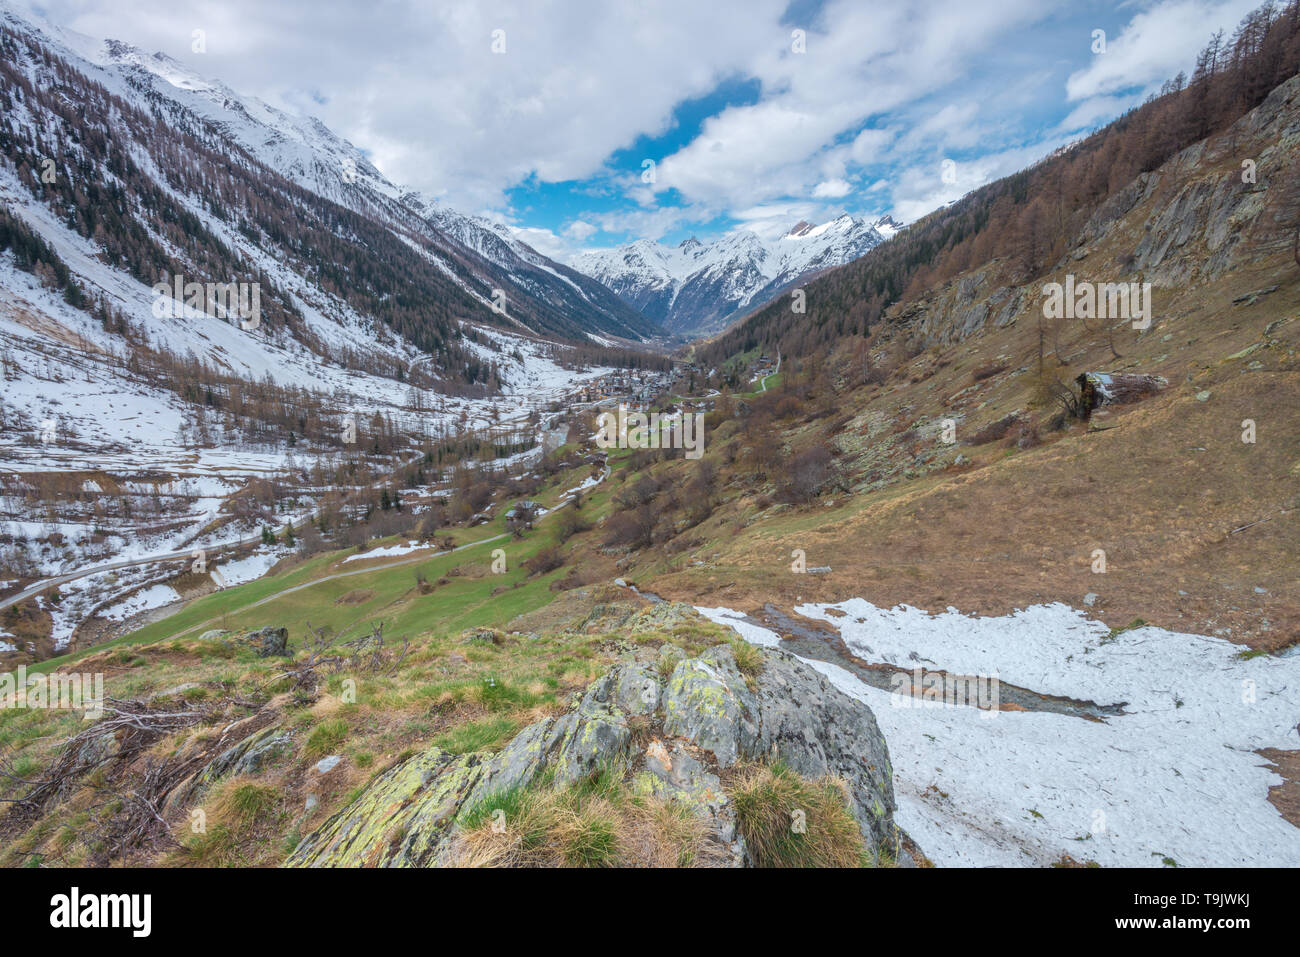 El solitario valle de montaña en los Alpes Berneses, Suiza. Las montañas nevadas, el valle de la montaña vistos desde lo alto de las laderas. Foto de stock